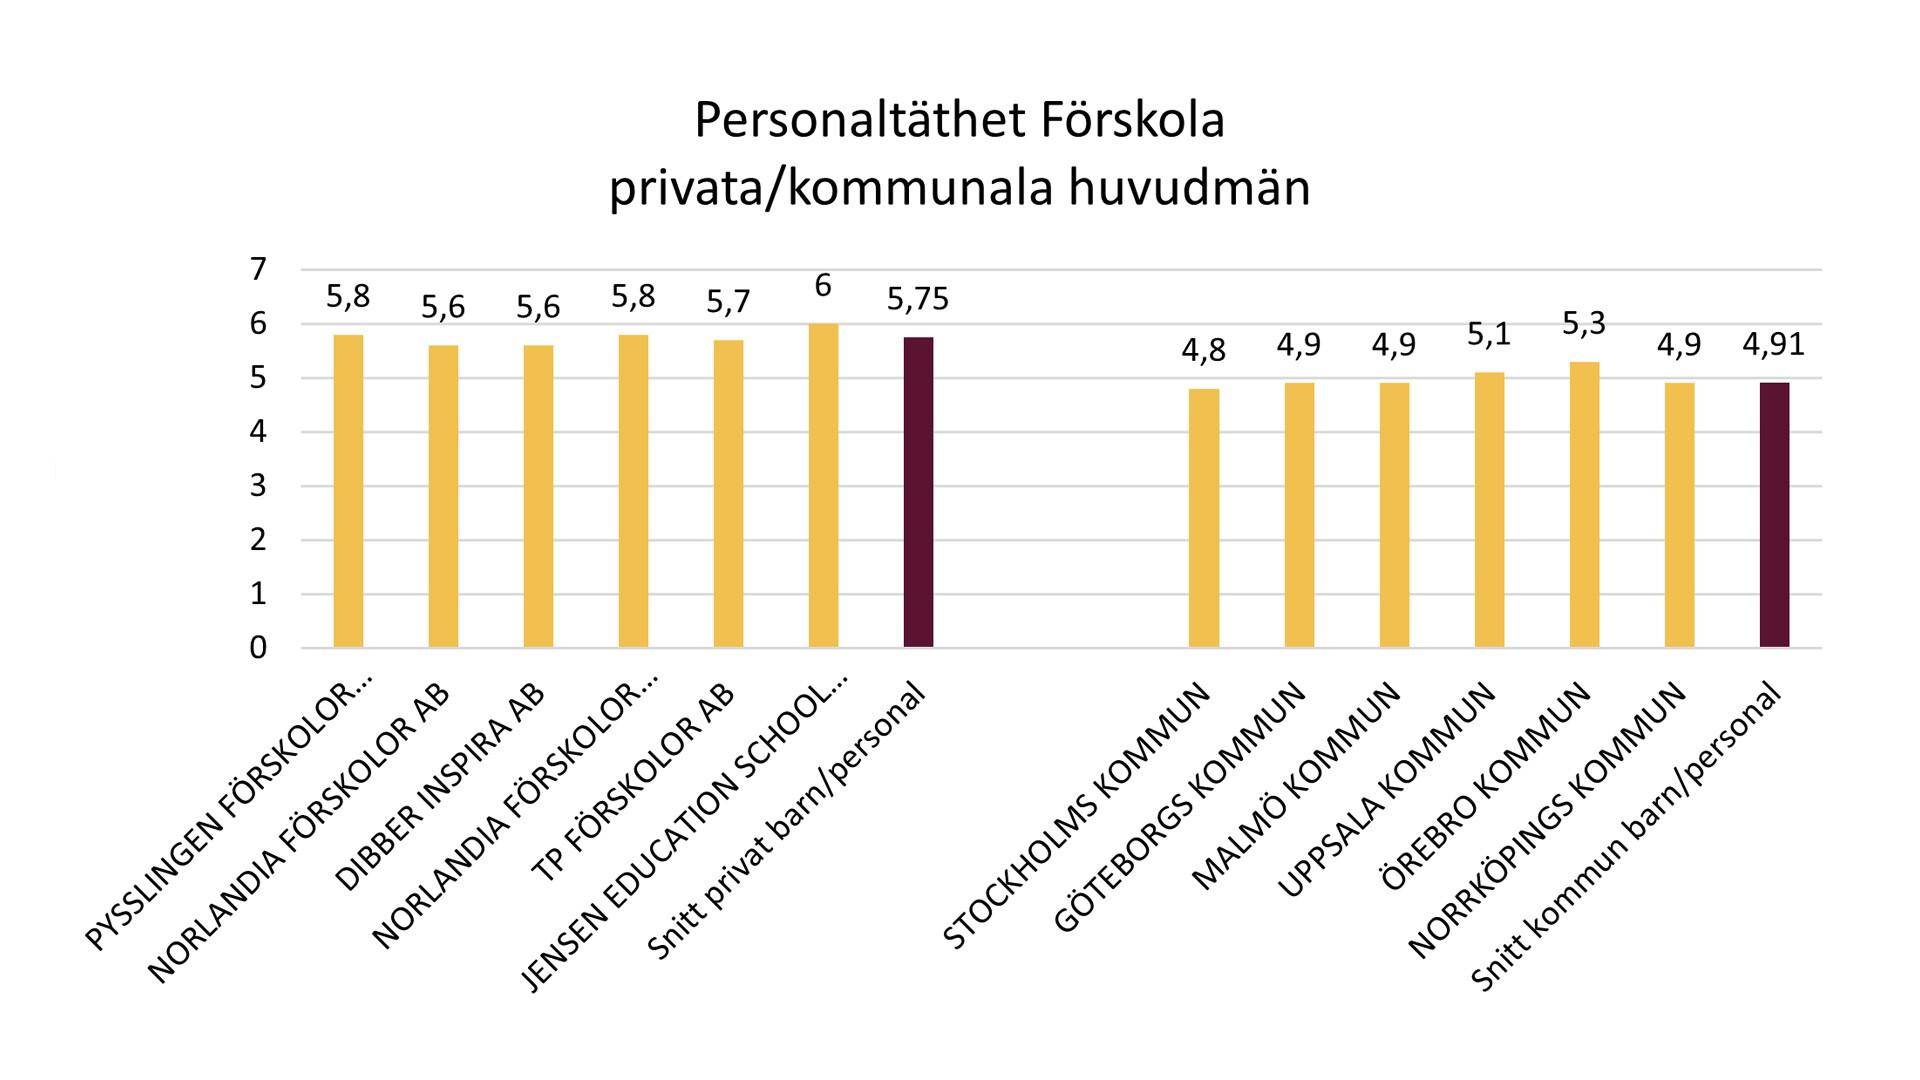 Statistik över personaltäthet i privata och kommunala förskolor.